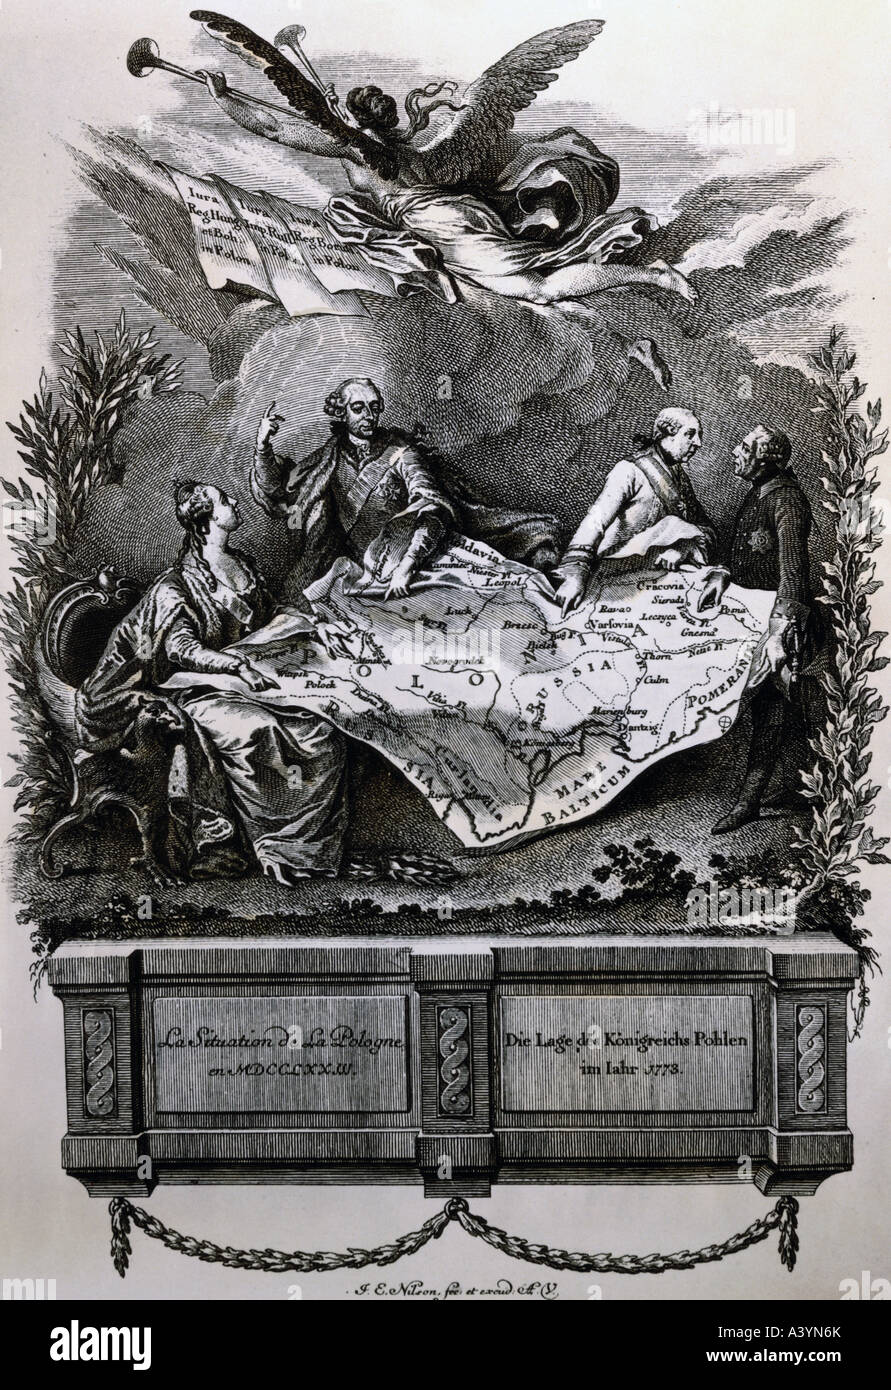 Geografía / viajes, Polonia, particiones, primera partición, 1772 Copyright del artista no ha de ser borrado Foto de stock